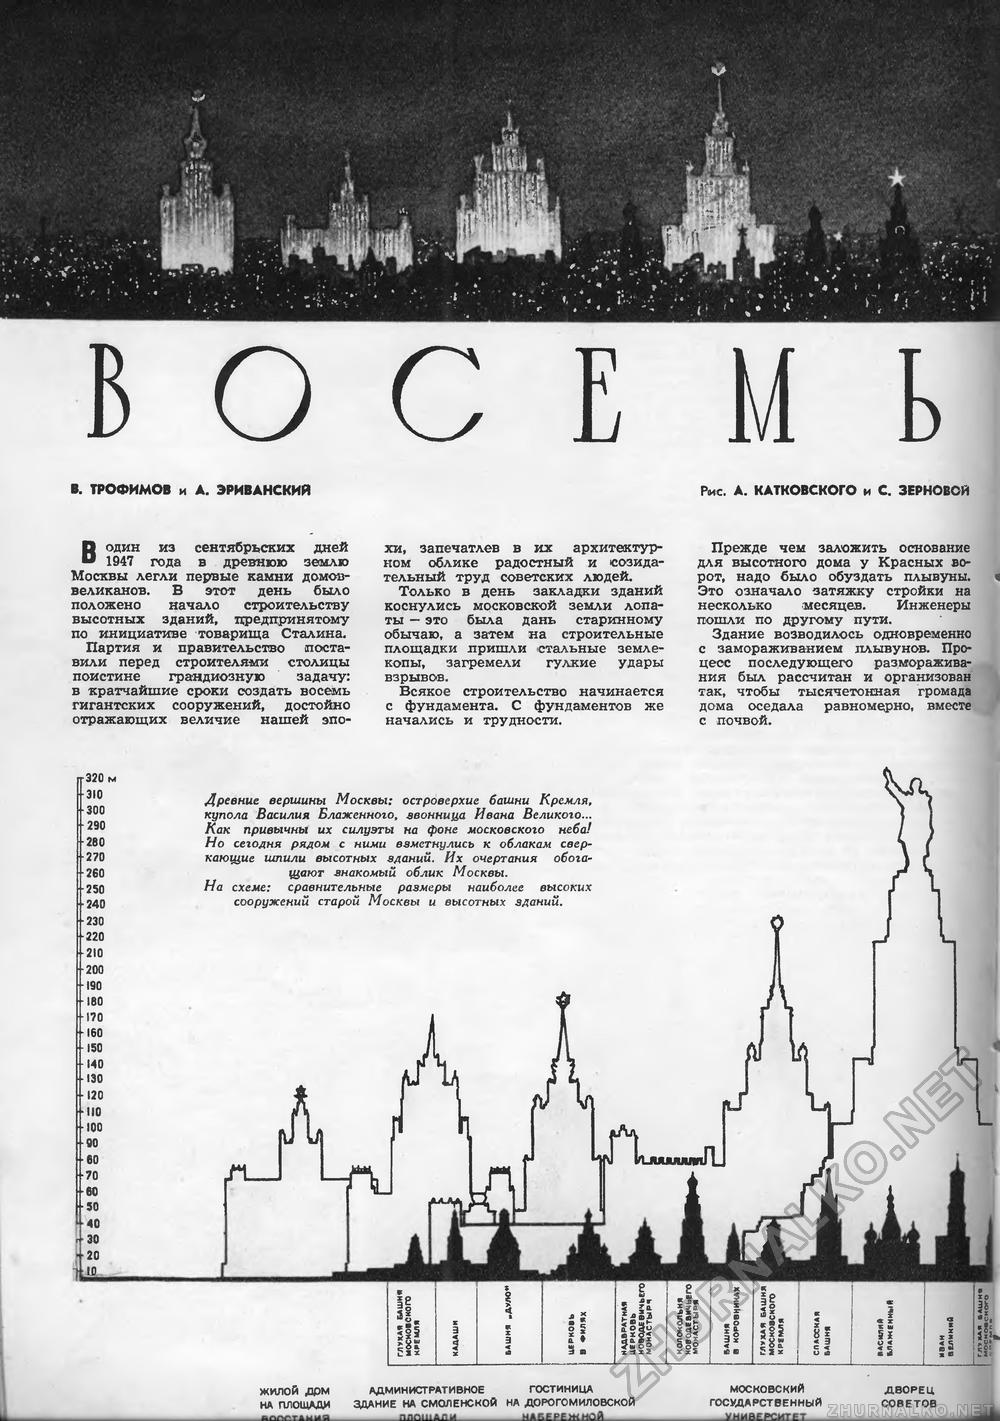 высотки москвы сталинские на карте с названиями